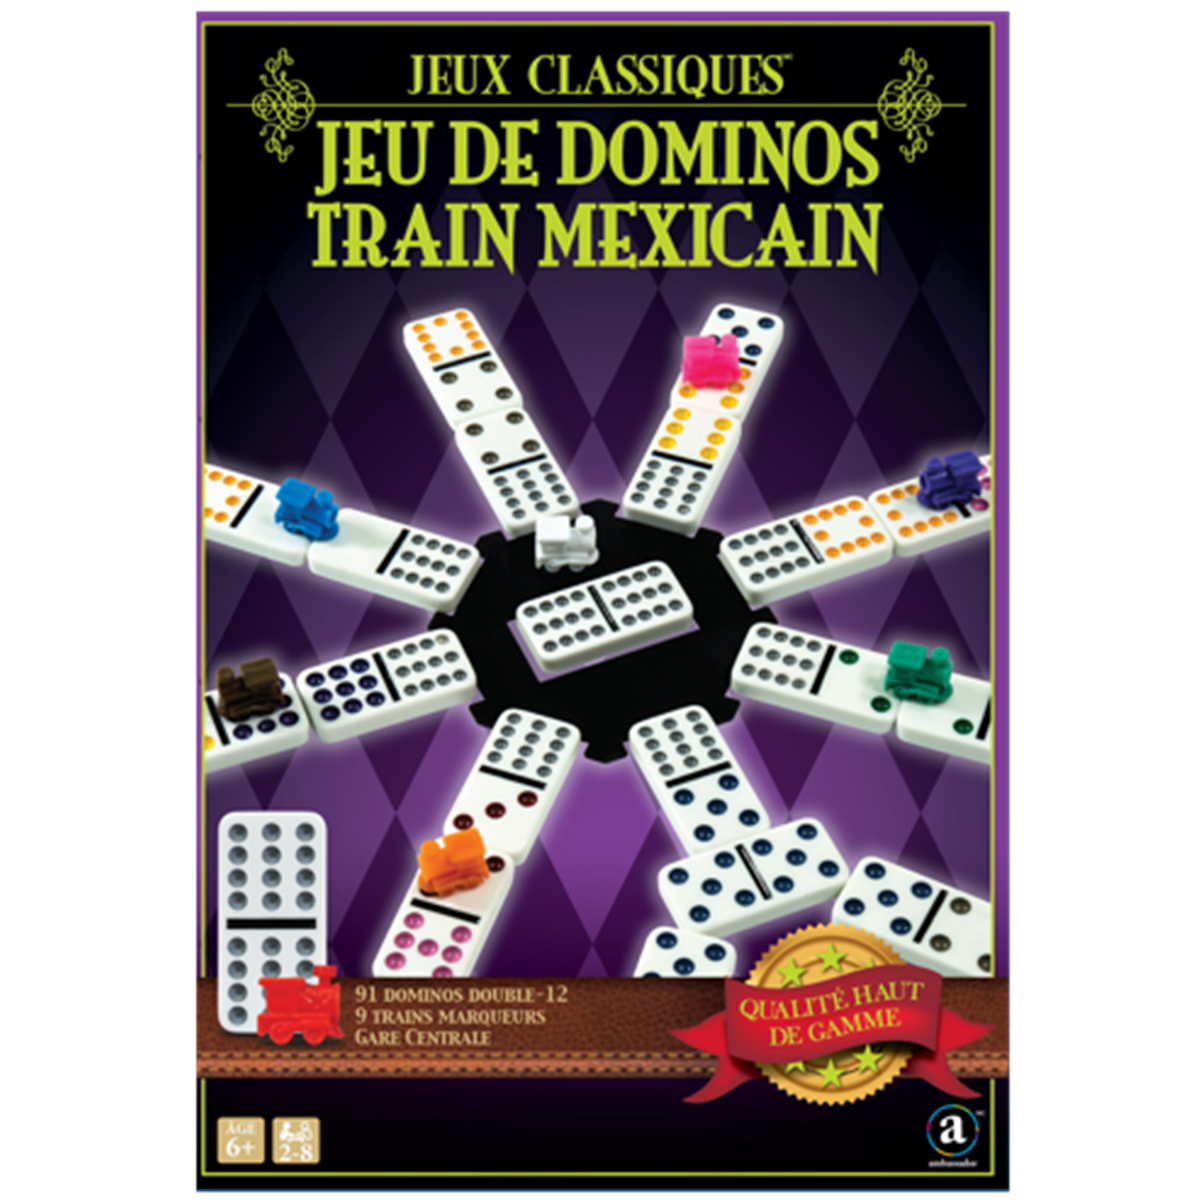 Acheter Mexican Train - Version Voyage - Jeu de société - Ludifolie